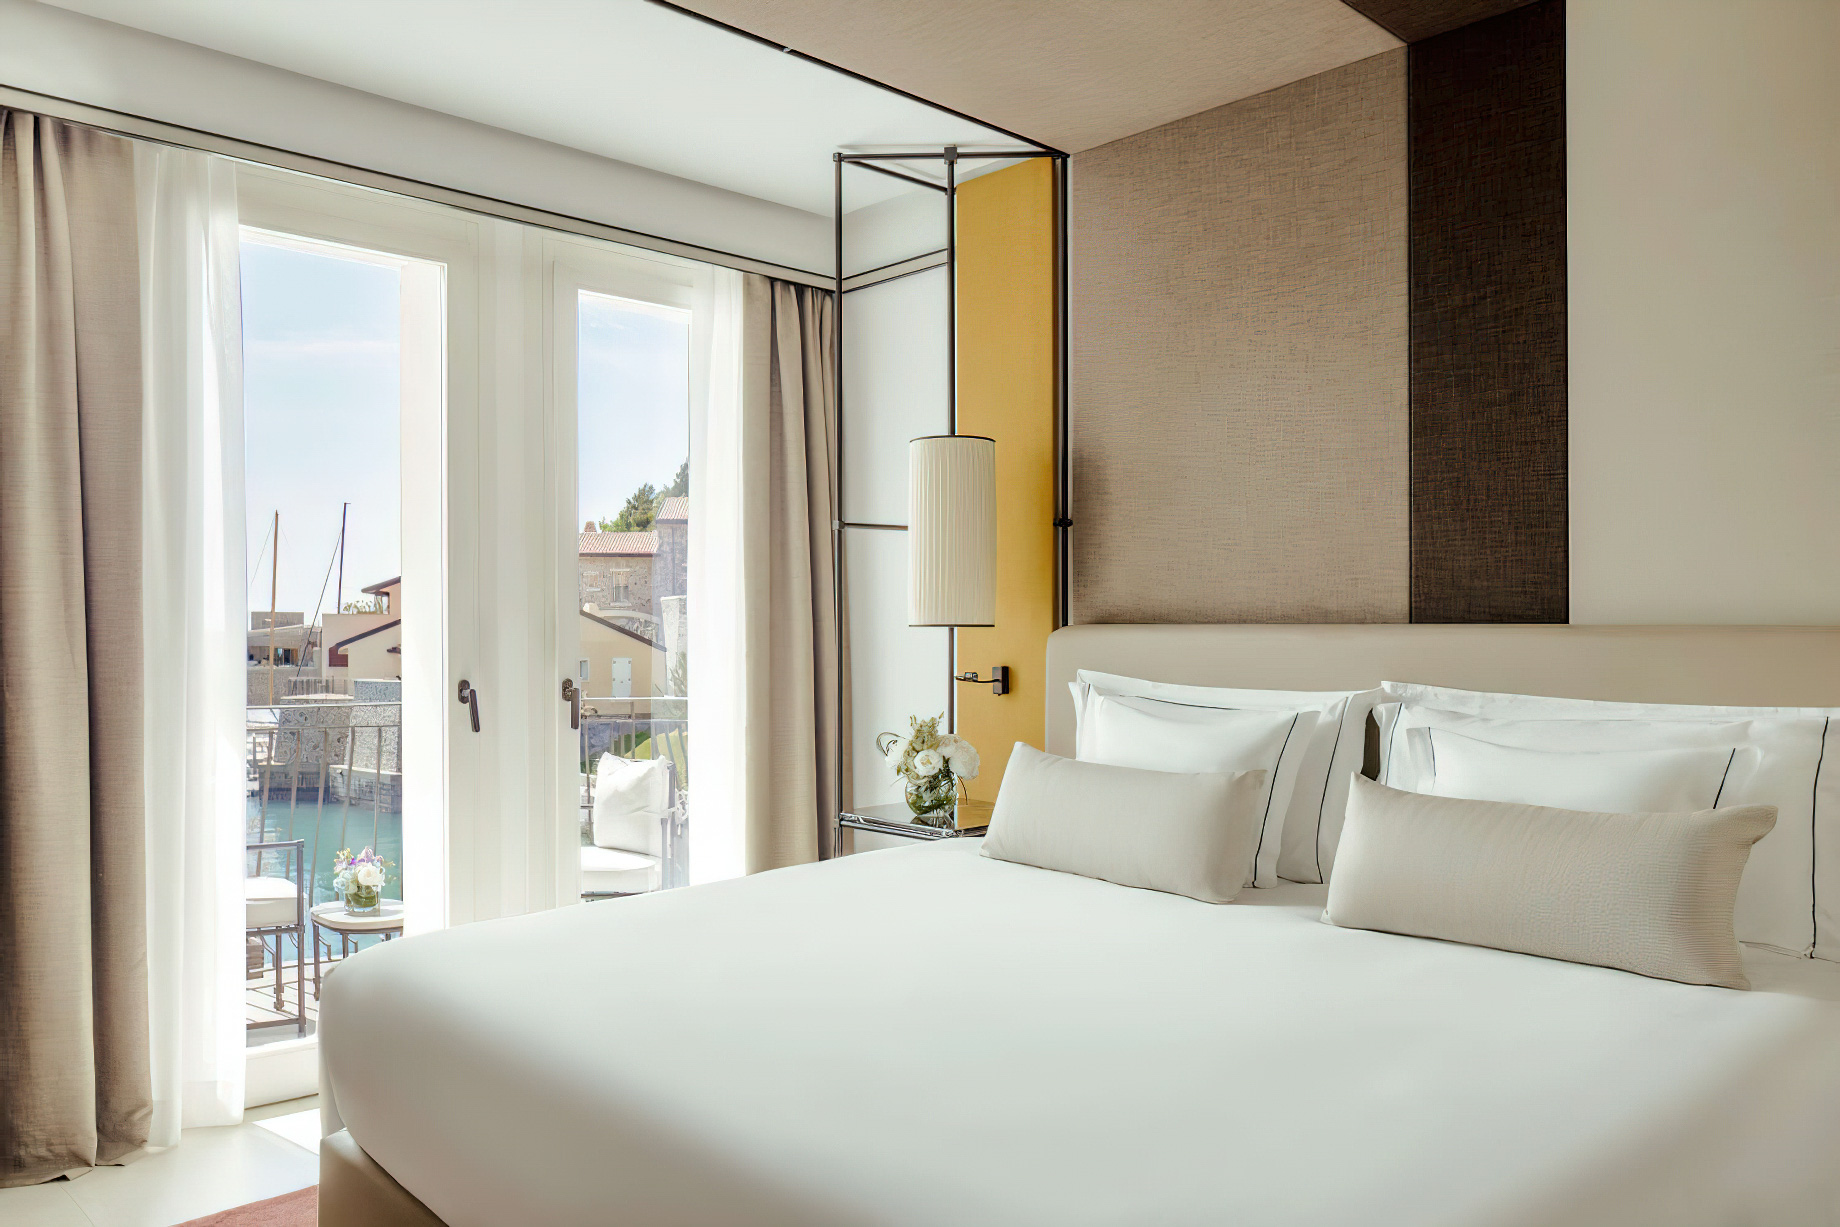 Tivoli Portopiccolo Sistiana Resort & Spa – Sistiana, Italy – Deluxe Room